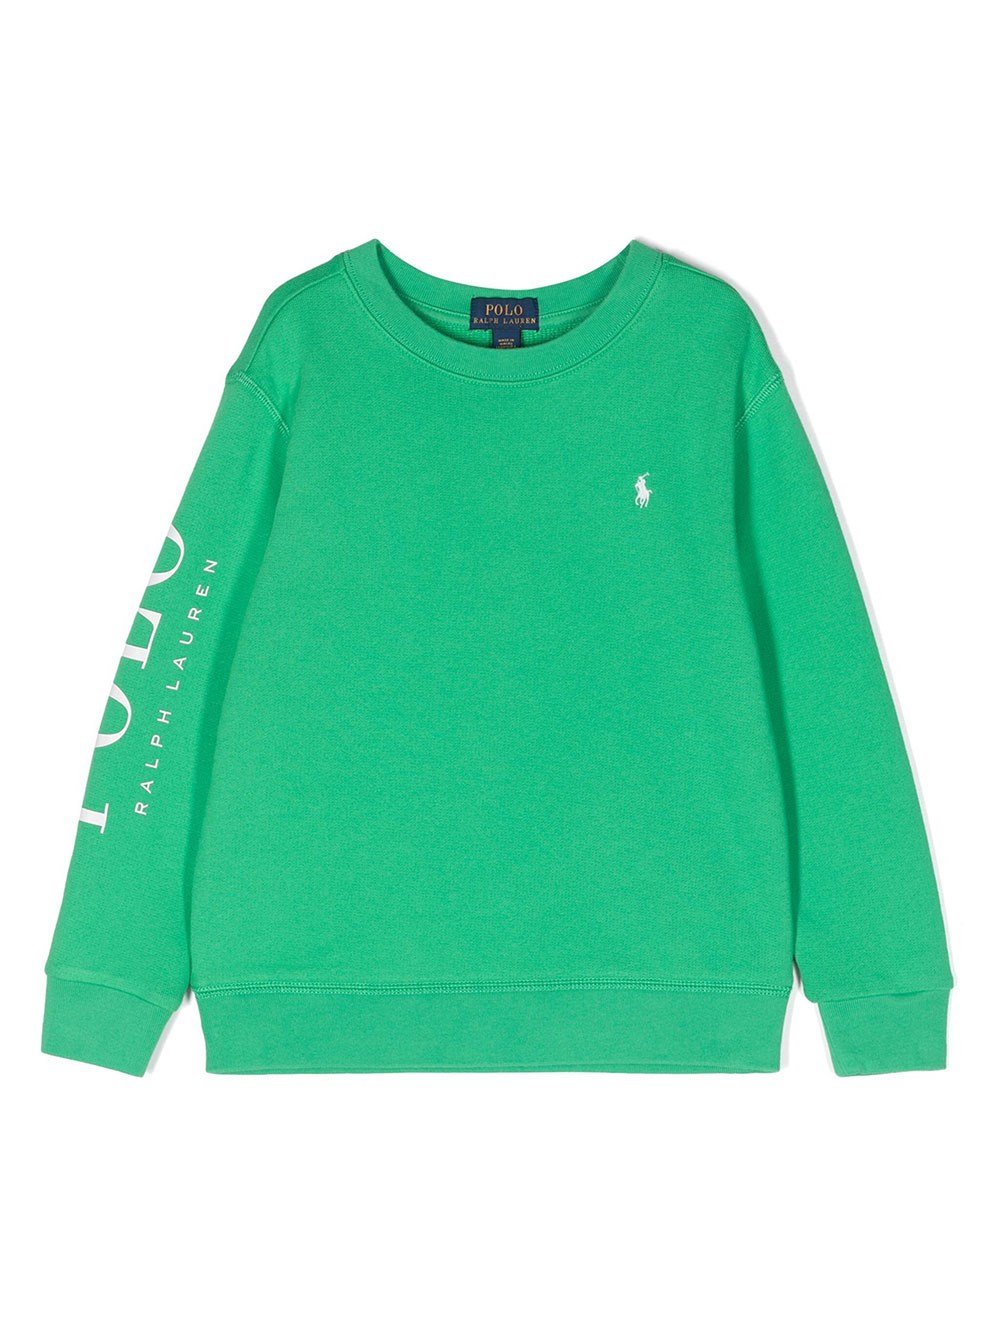 Ralph Lauren Kids' Polo Pony Jersey Sweatshirt In Green